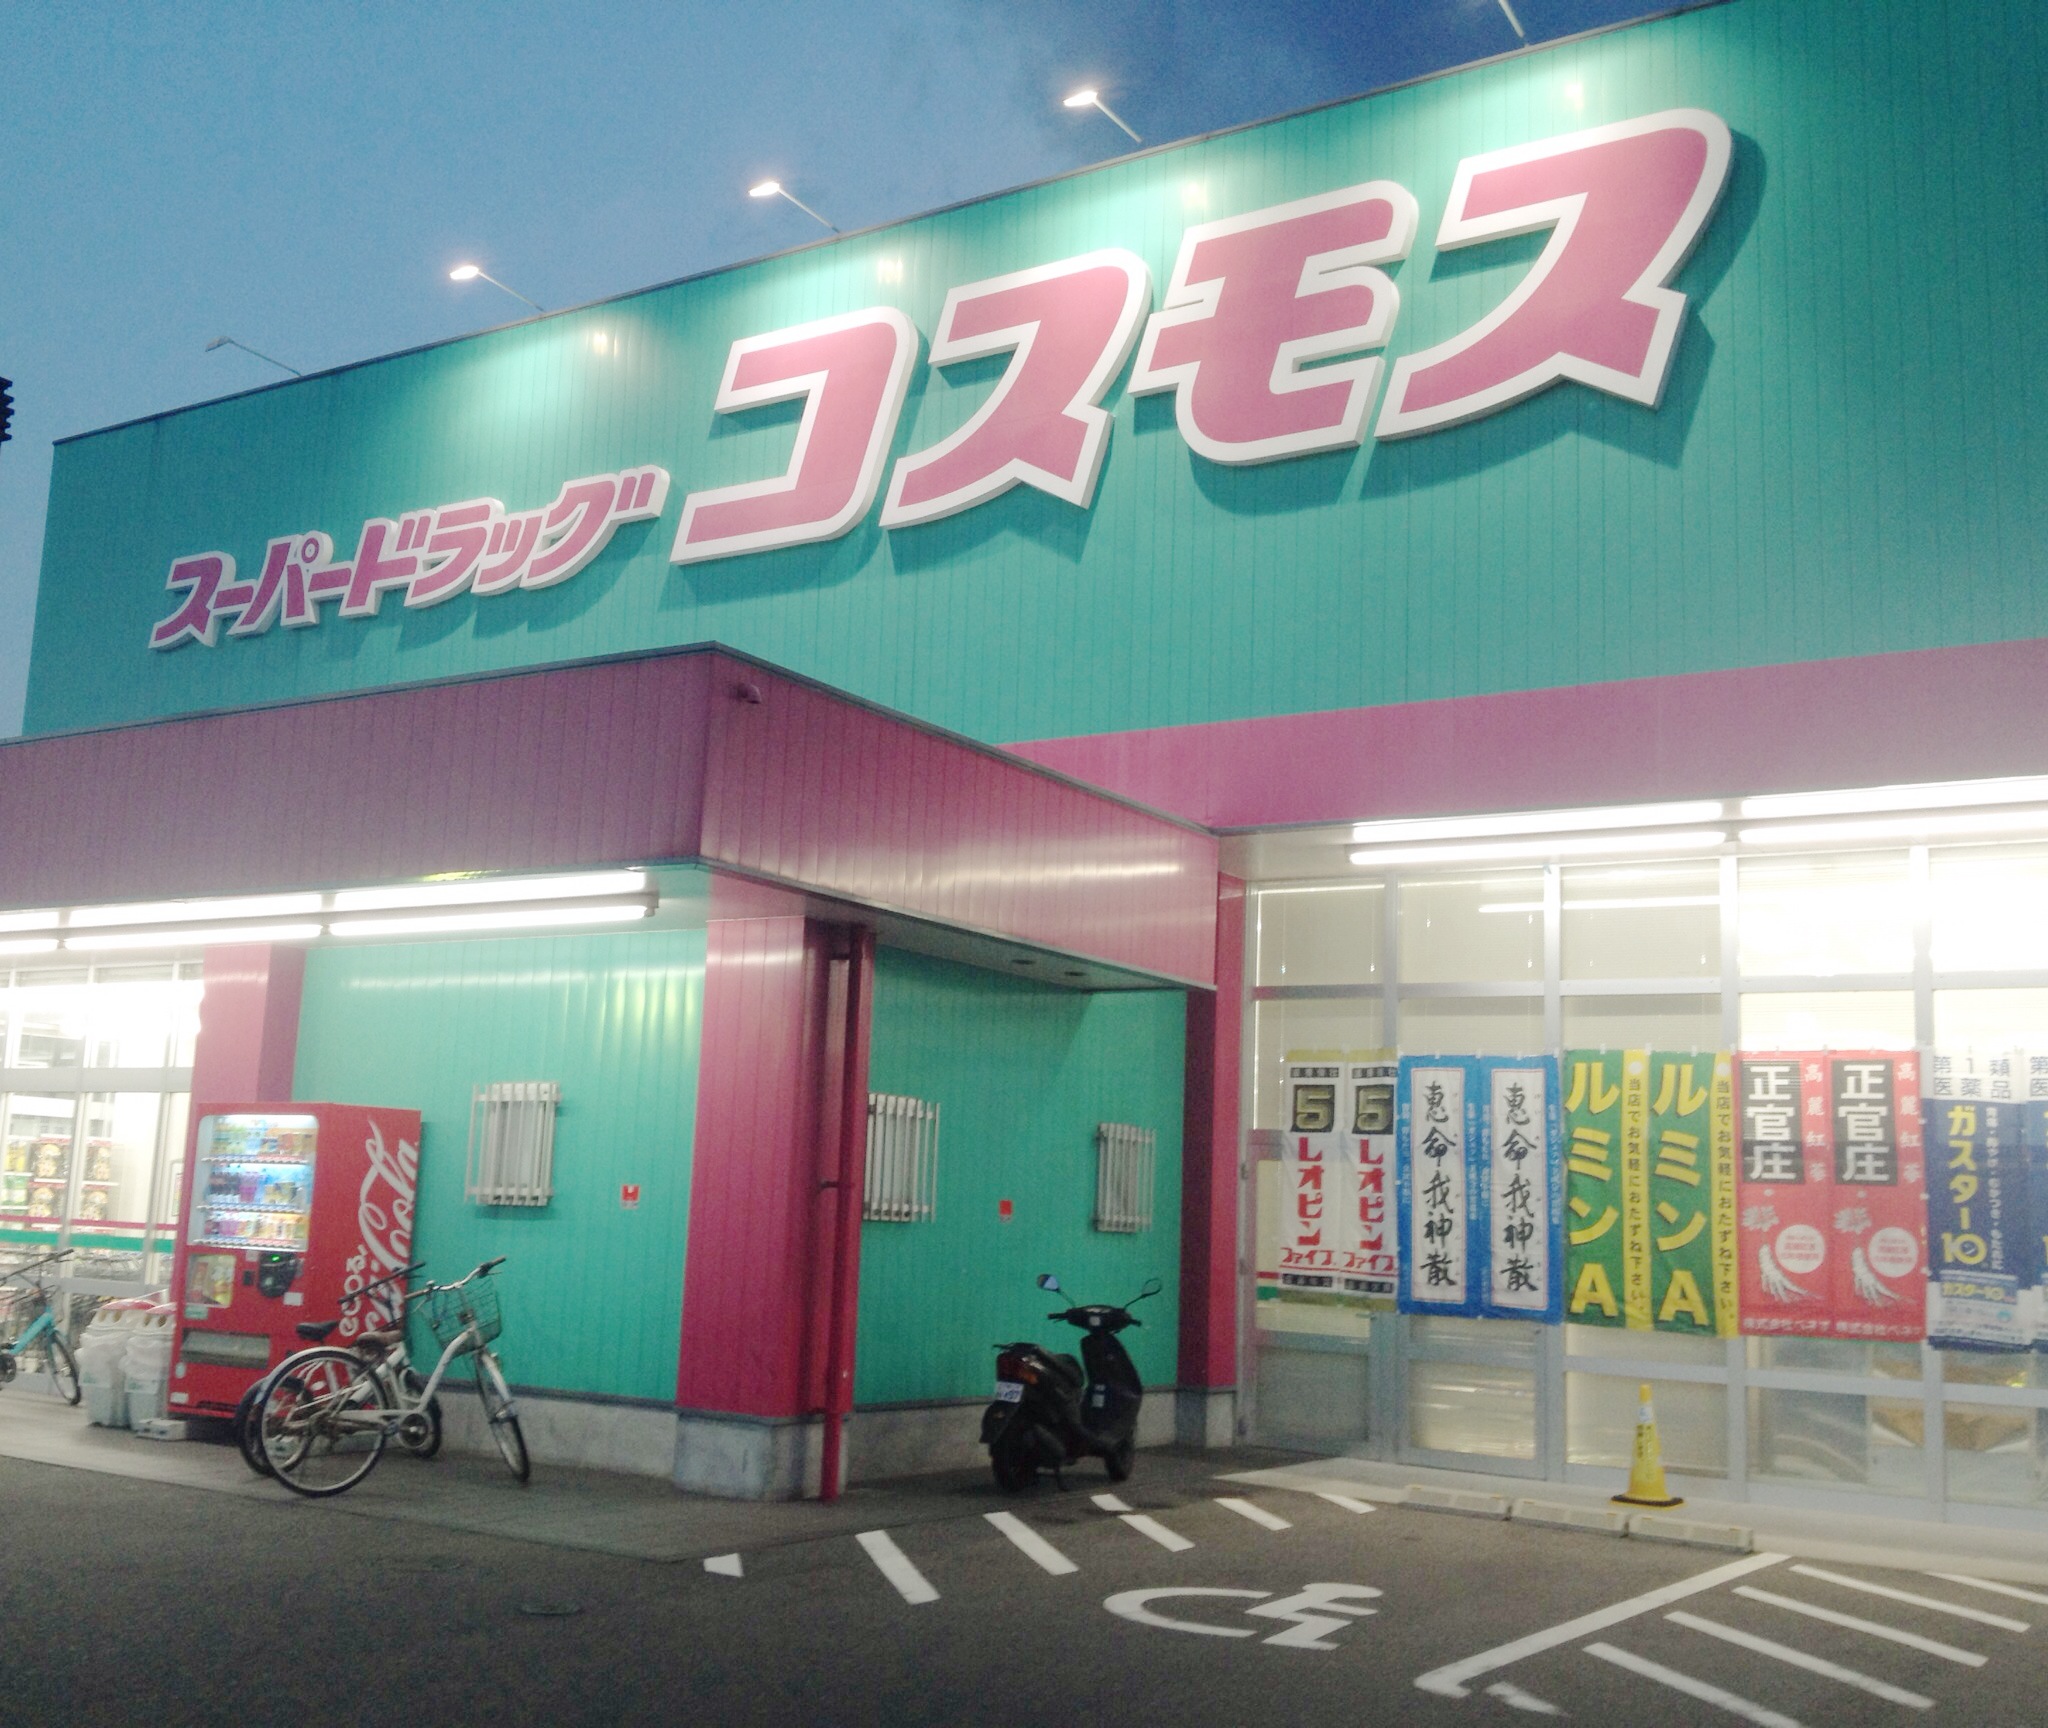 Dorakkusutoa. Discount drag cosmos Shin-Shimonoseki shop 997m until (drugstore)